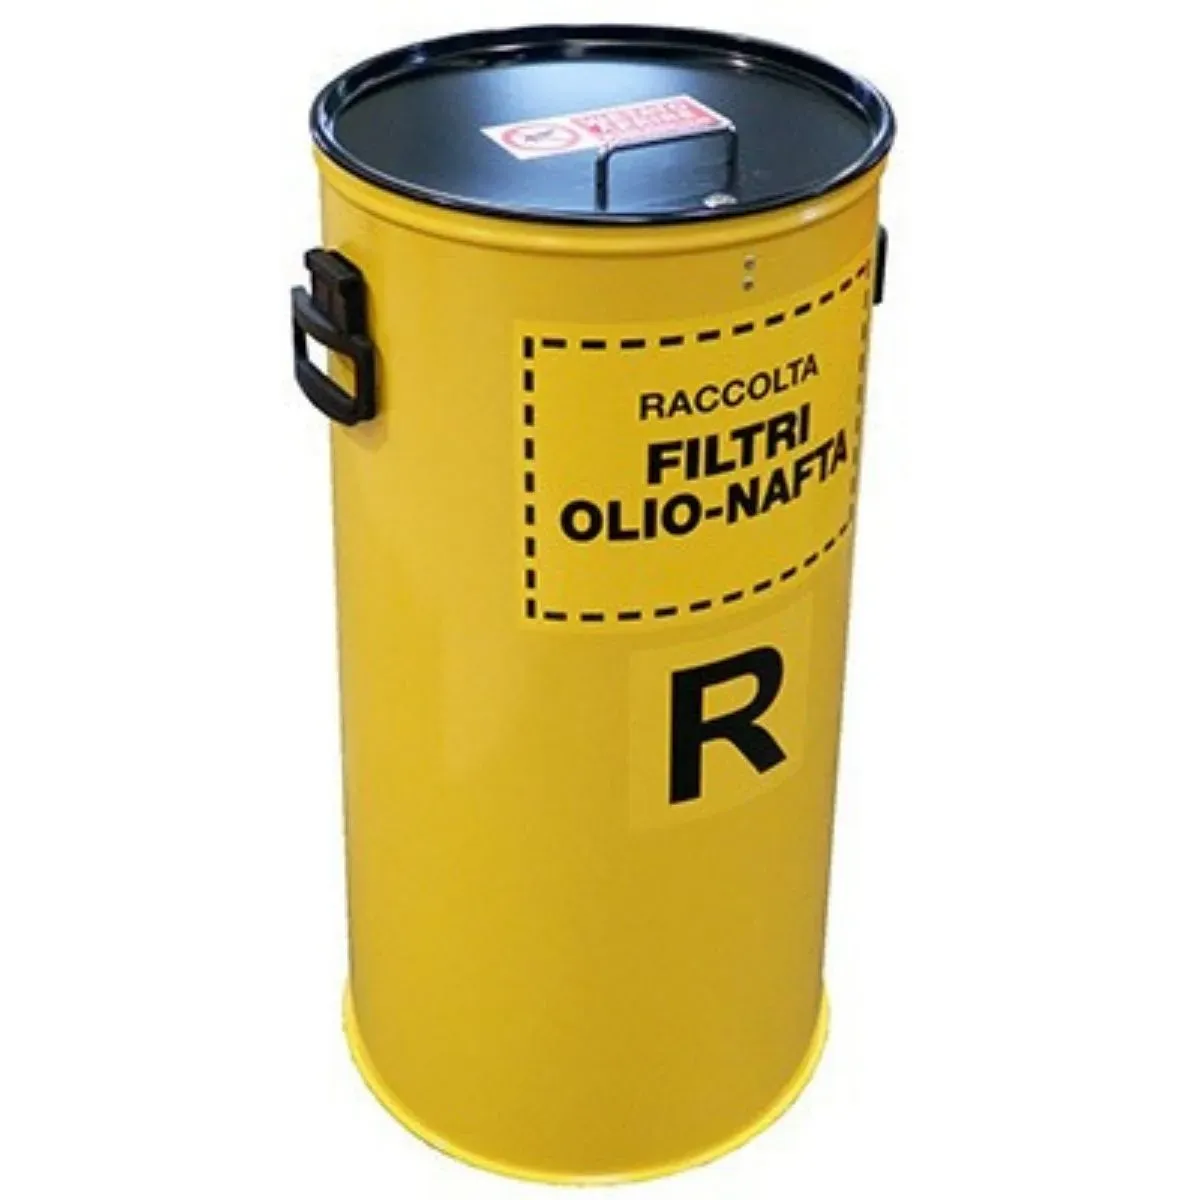 Contenitore Cilindrico per filtri olio e nafta usati – 60 litri